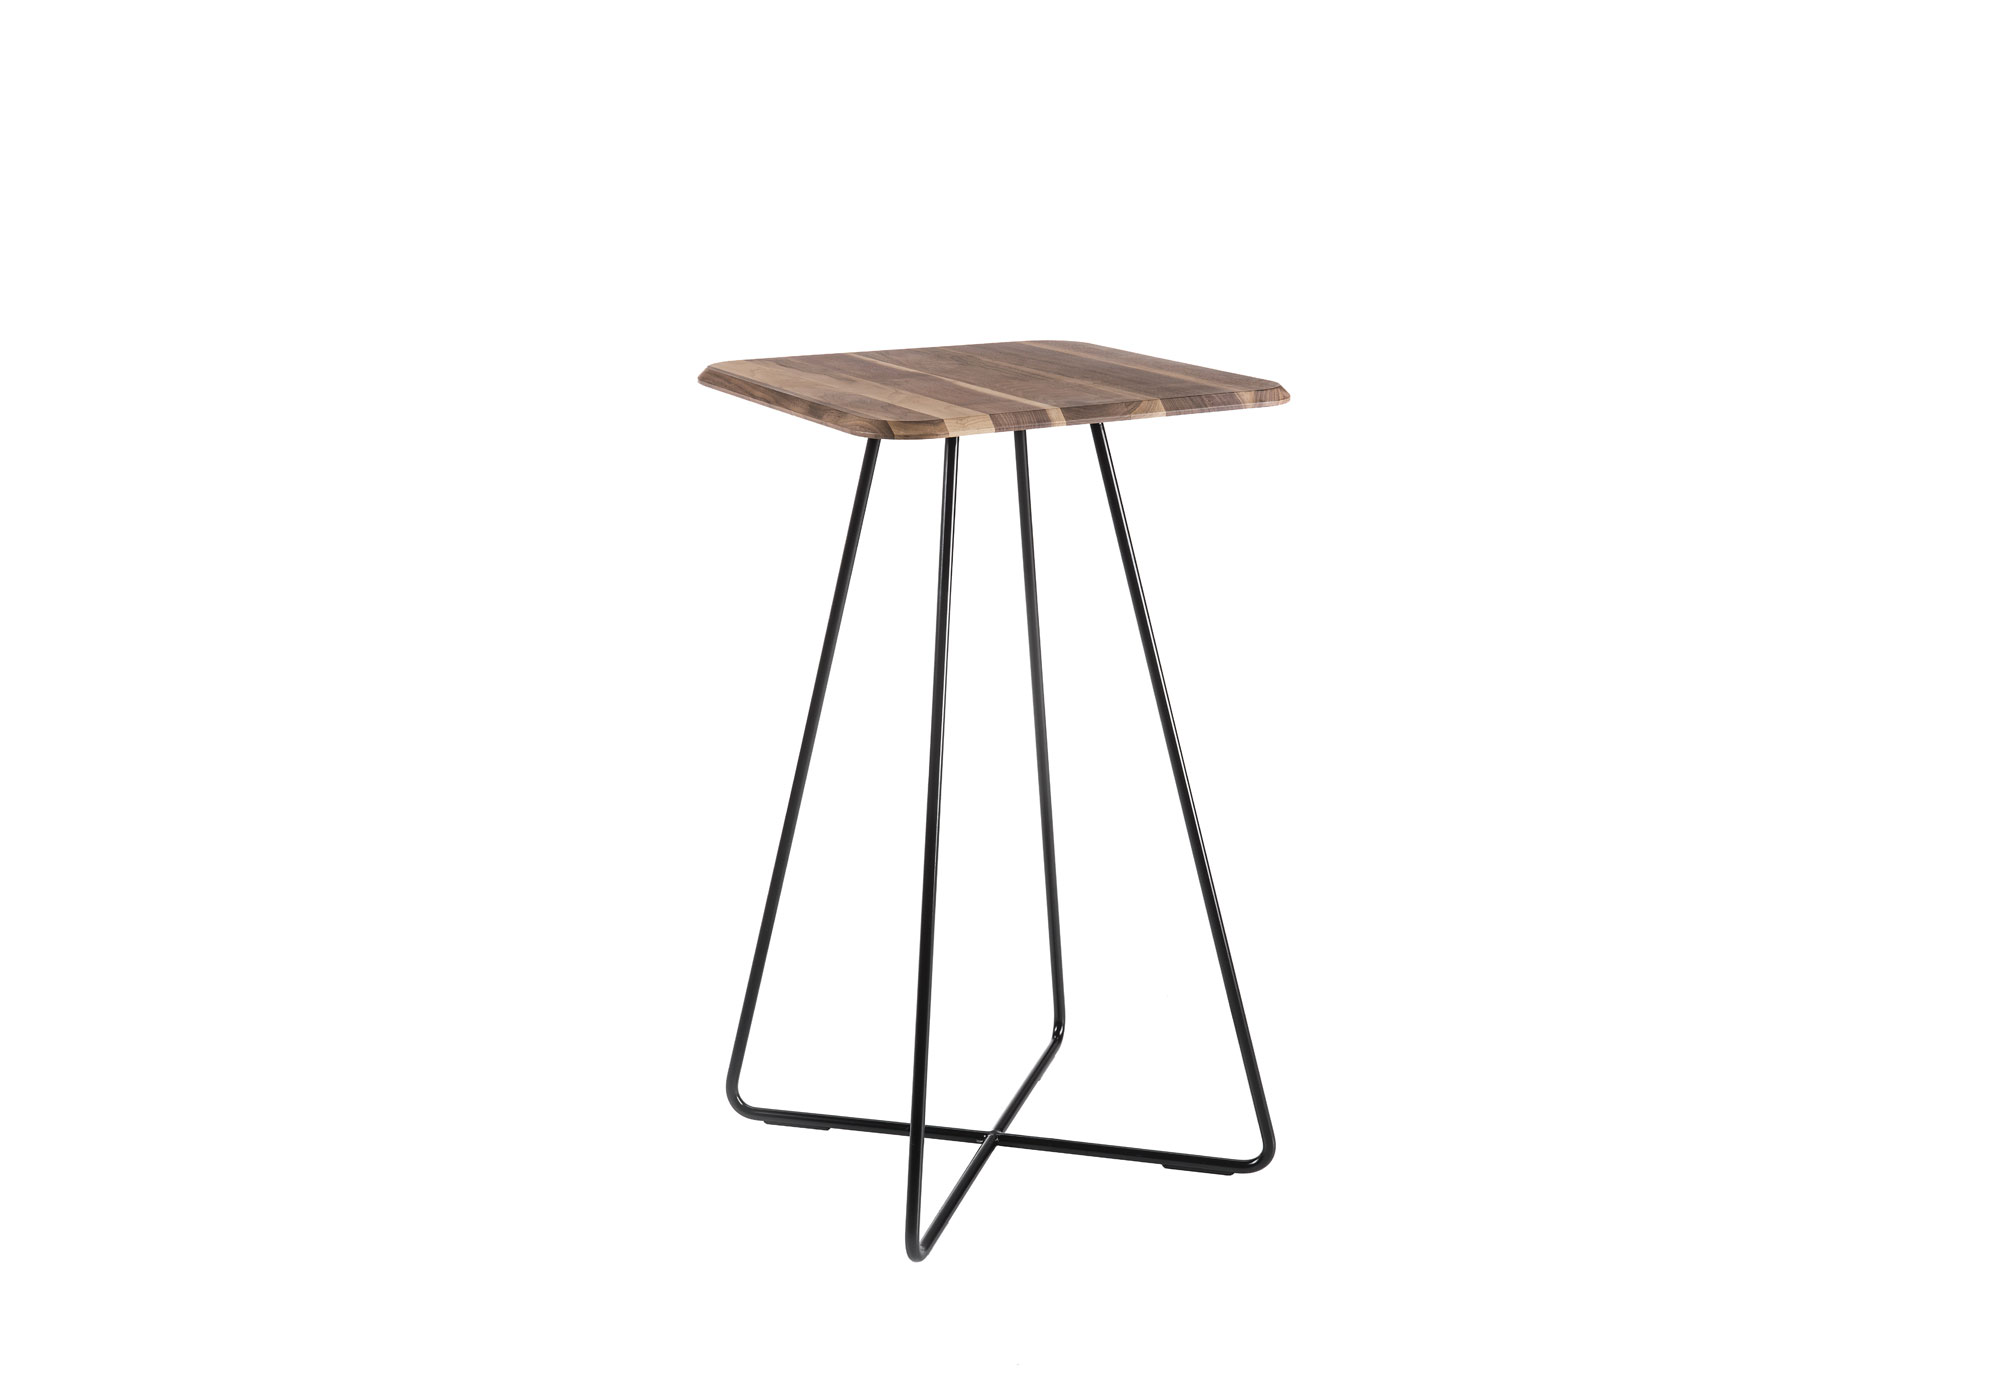 Tavolino alto con il piano in metallo verniciato è coperto da un altro piano impiallacciato in legno noce canaletto. Scopri di più su Altek Italia Design.